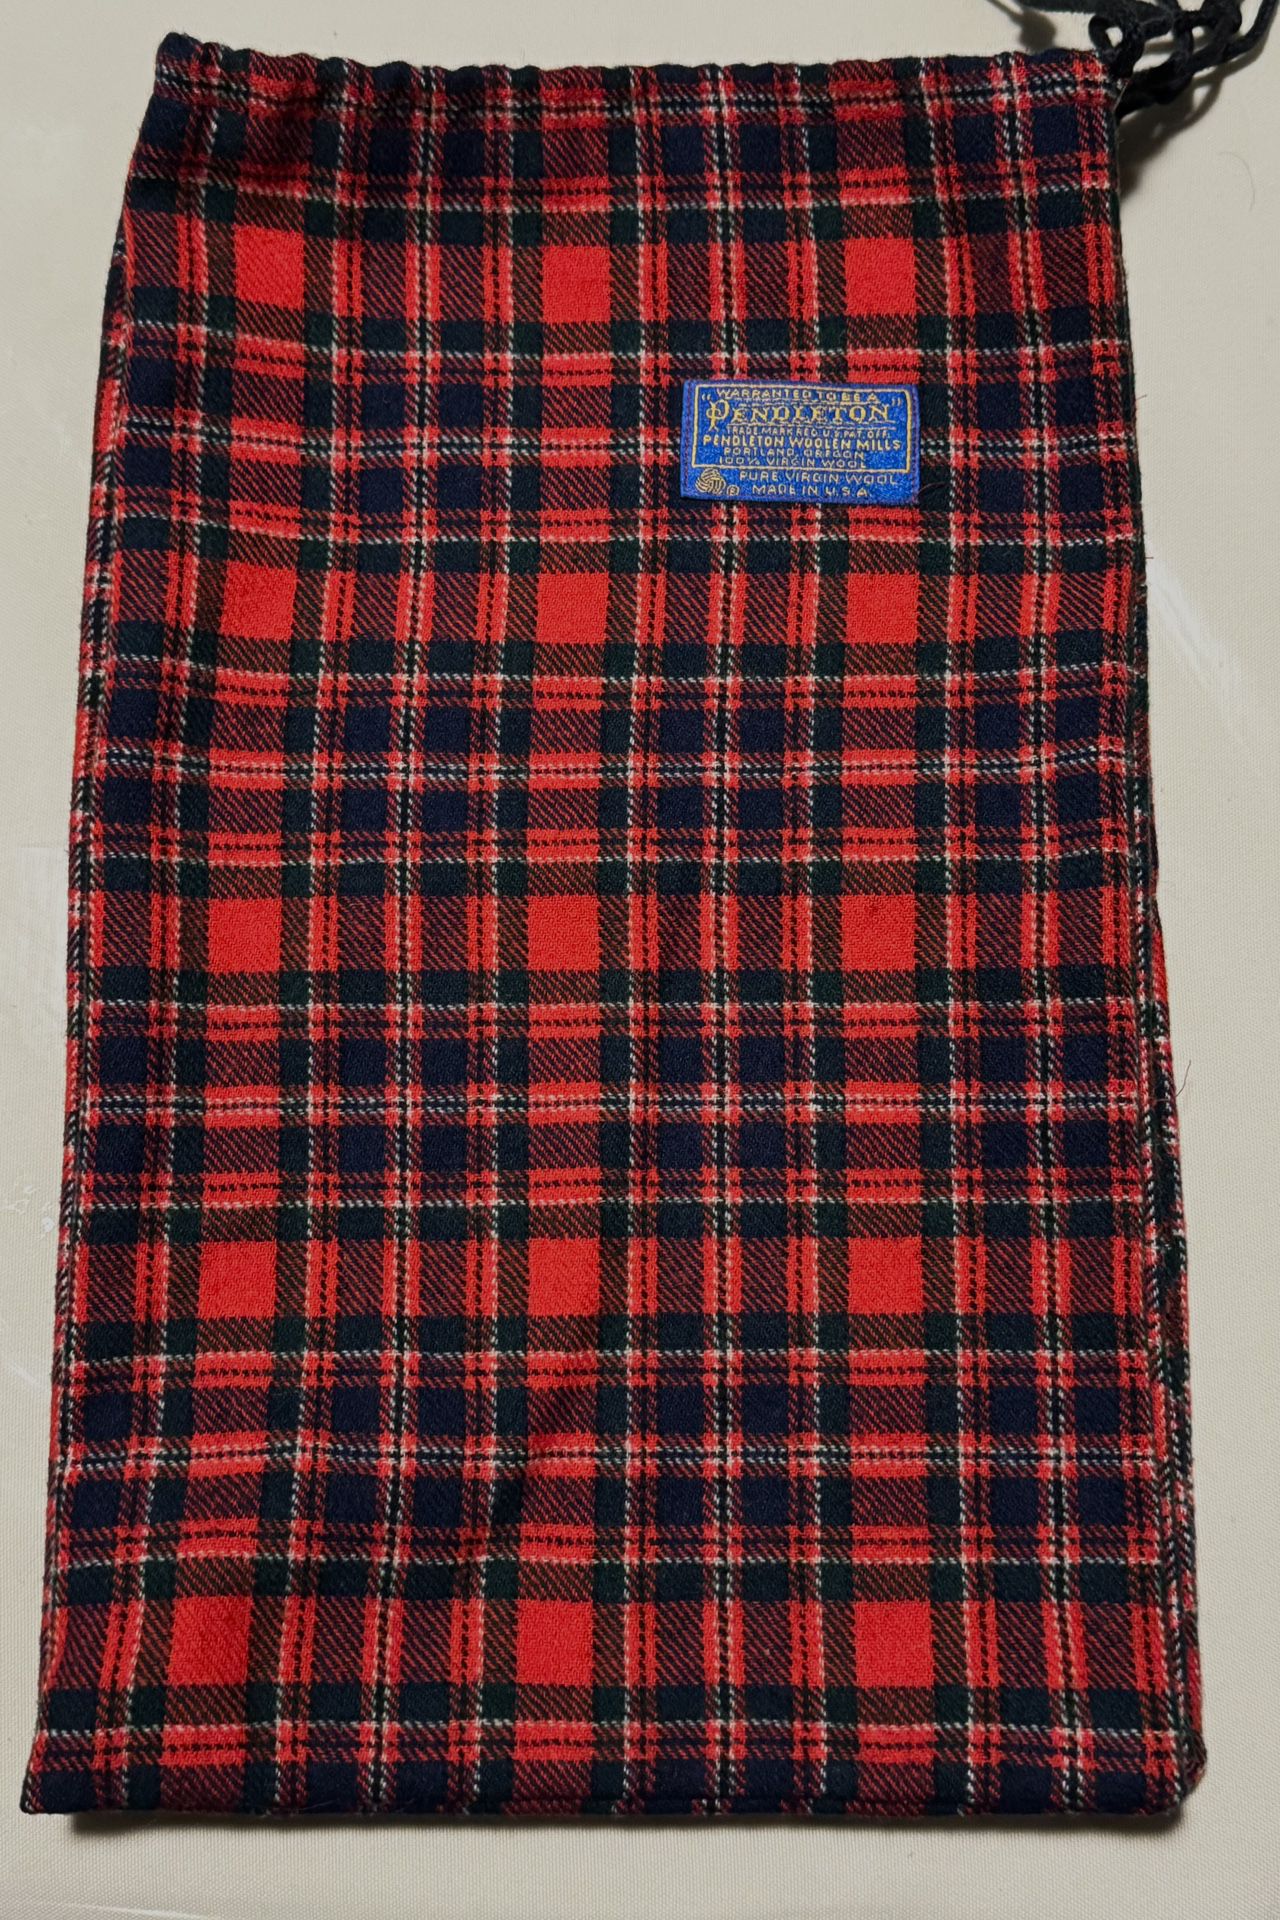 Pendleton Drawstring Bag Red Plaid Flannel 